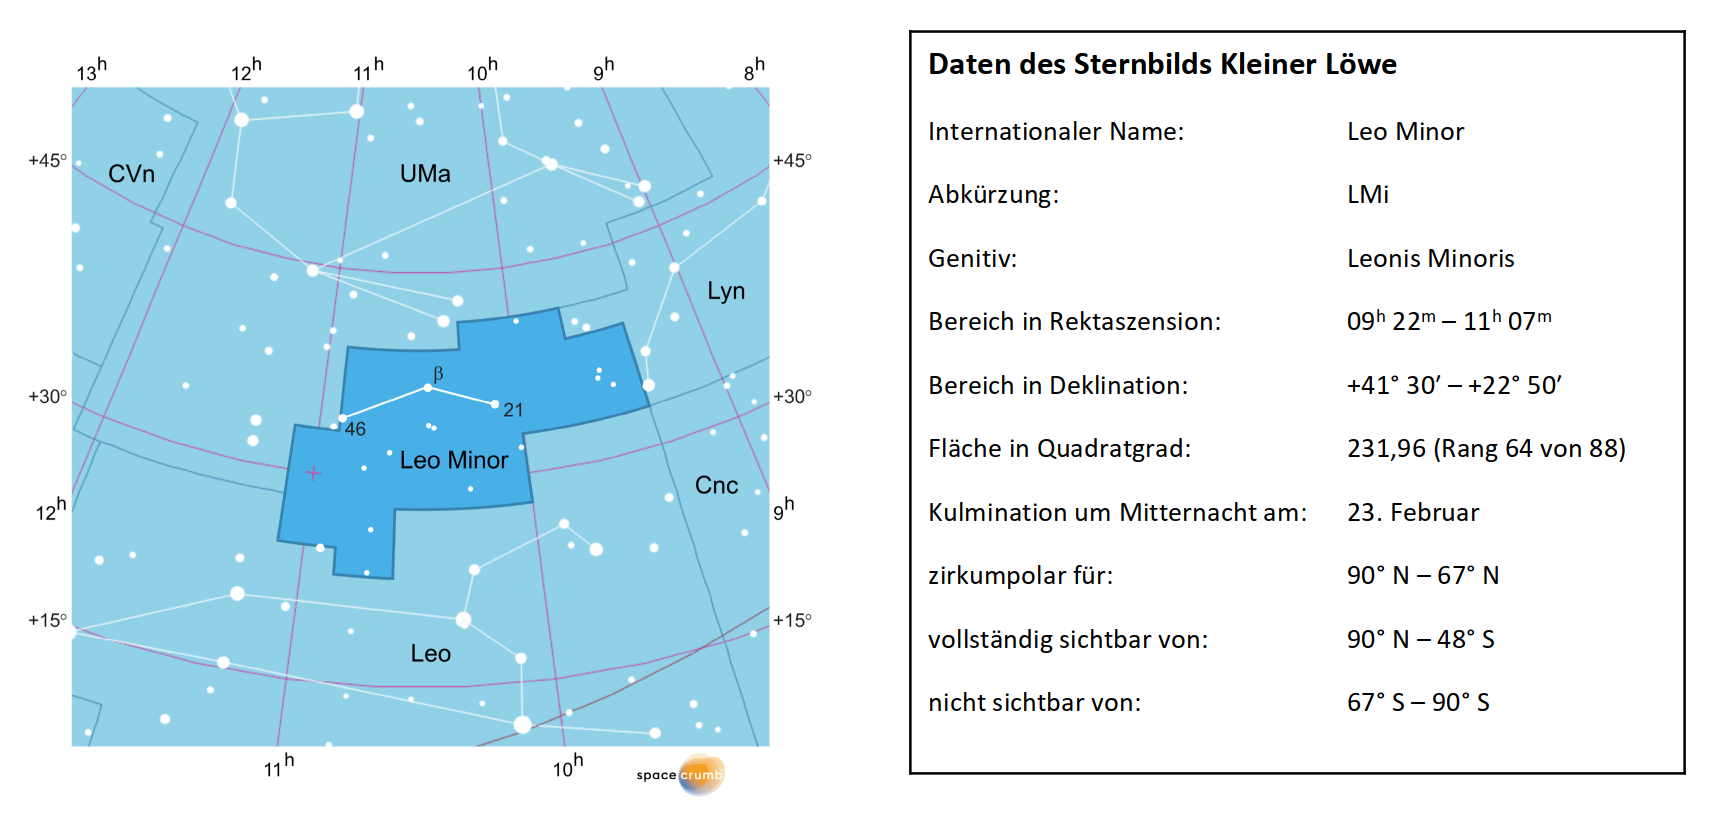 Links zeigt eine mit Koordinaten versehene Karte eines Himmelsausschnitts weiße Sterne auf hellblauem Hintergrund. Die Fläche, die das Sternbild Kleiner Löwe einnimmt, ist dunkelblau hervorgehoben. Eine Tabelle rechts gibt wichtige Daten des Sternbilds an.